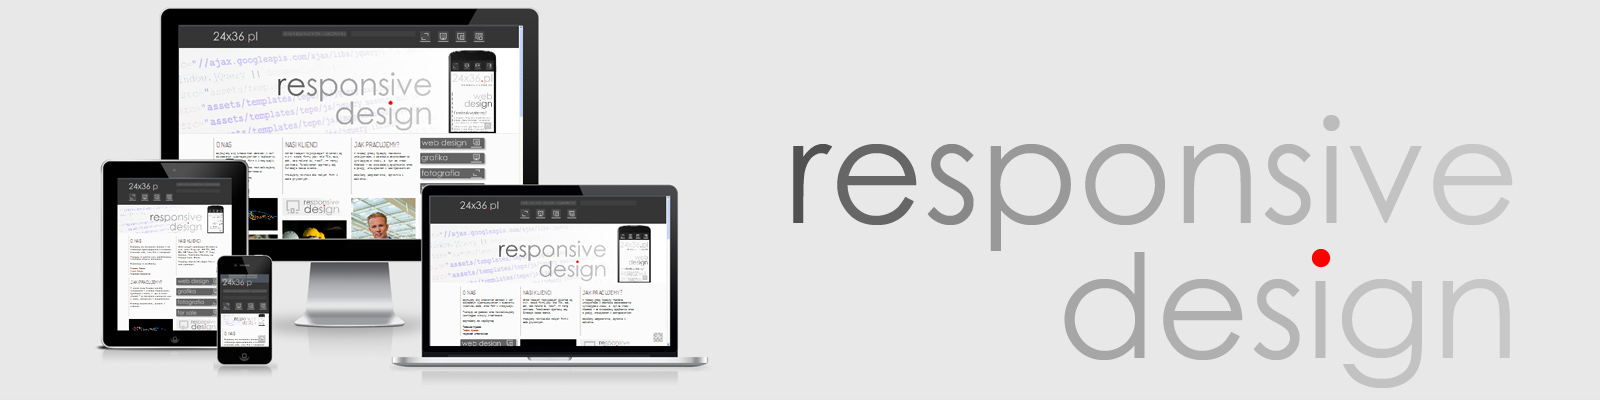 budowa stron internetowych responsive design projekty stron www  responsywne strony mobilne